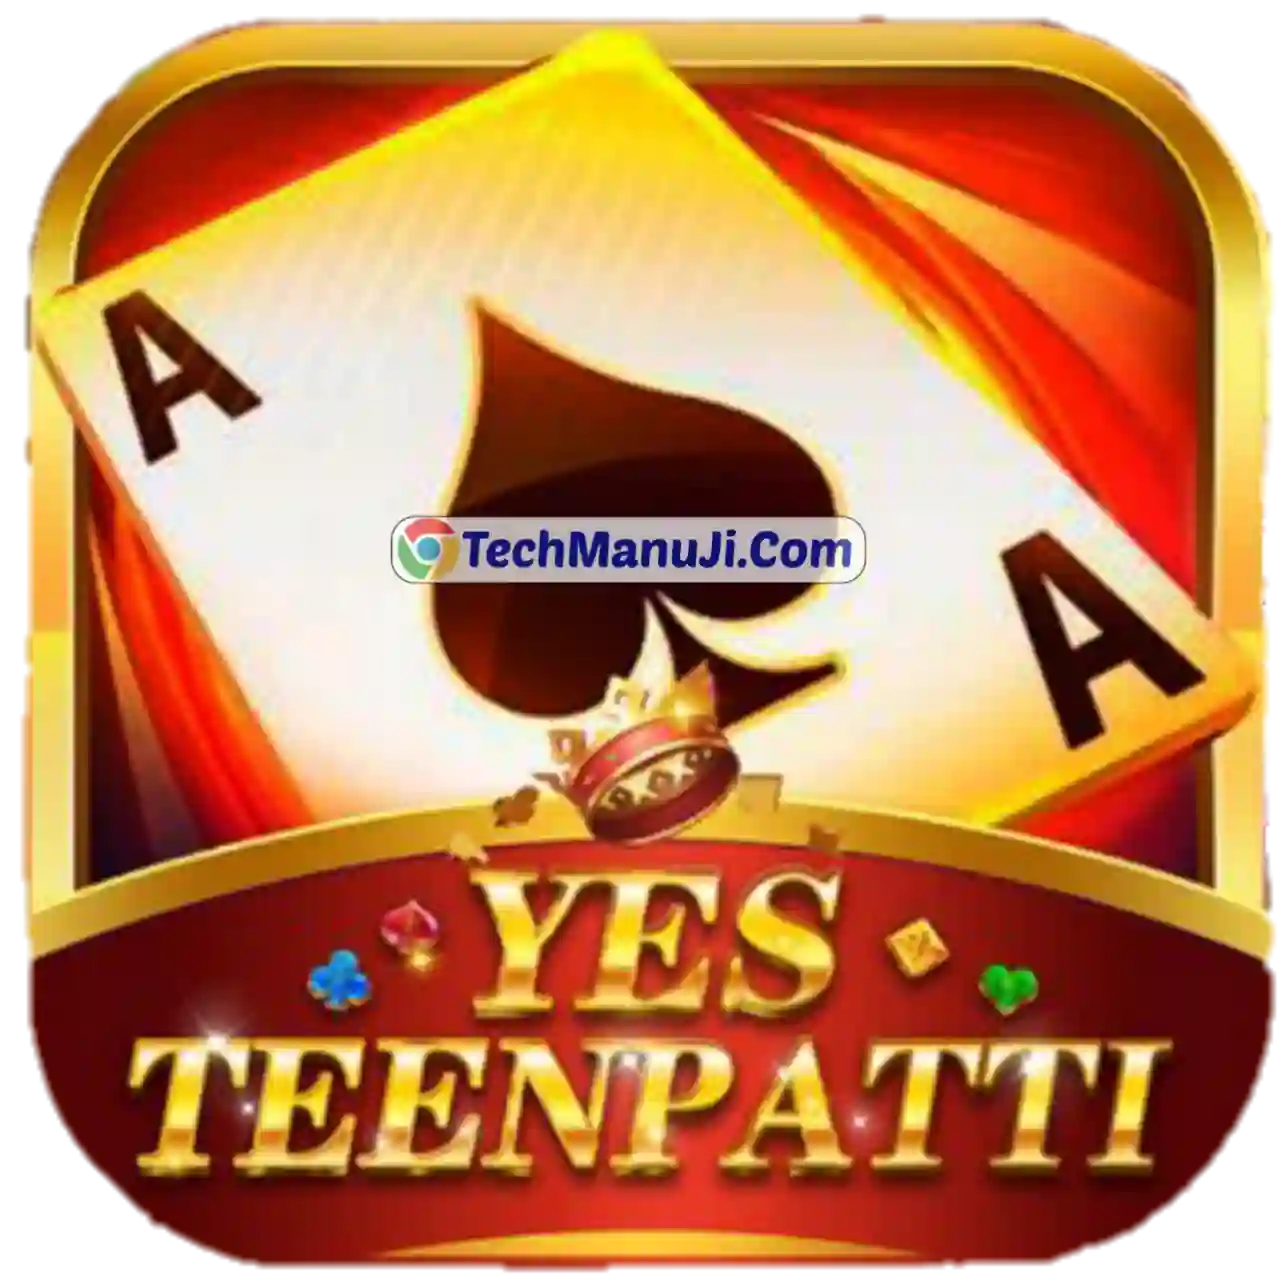 Teen Patti Yes Apk Download - All Teen Patti App List 51 Bonus